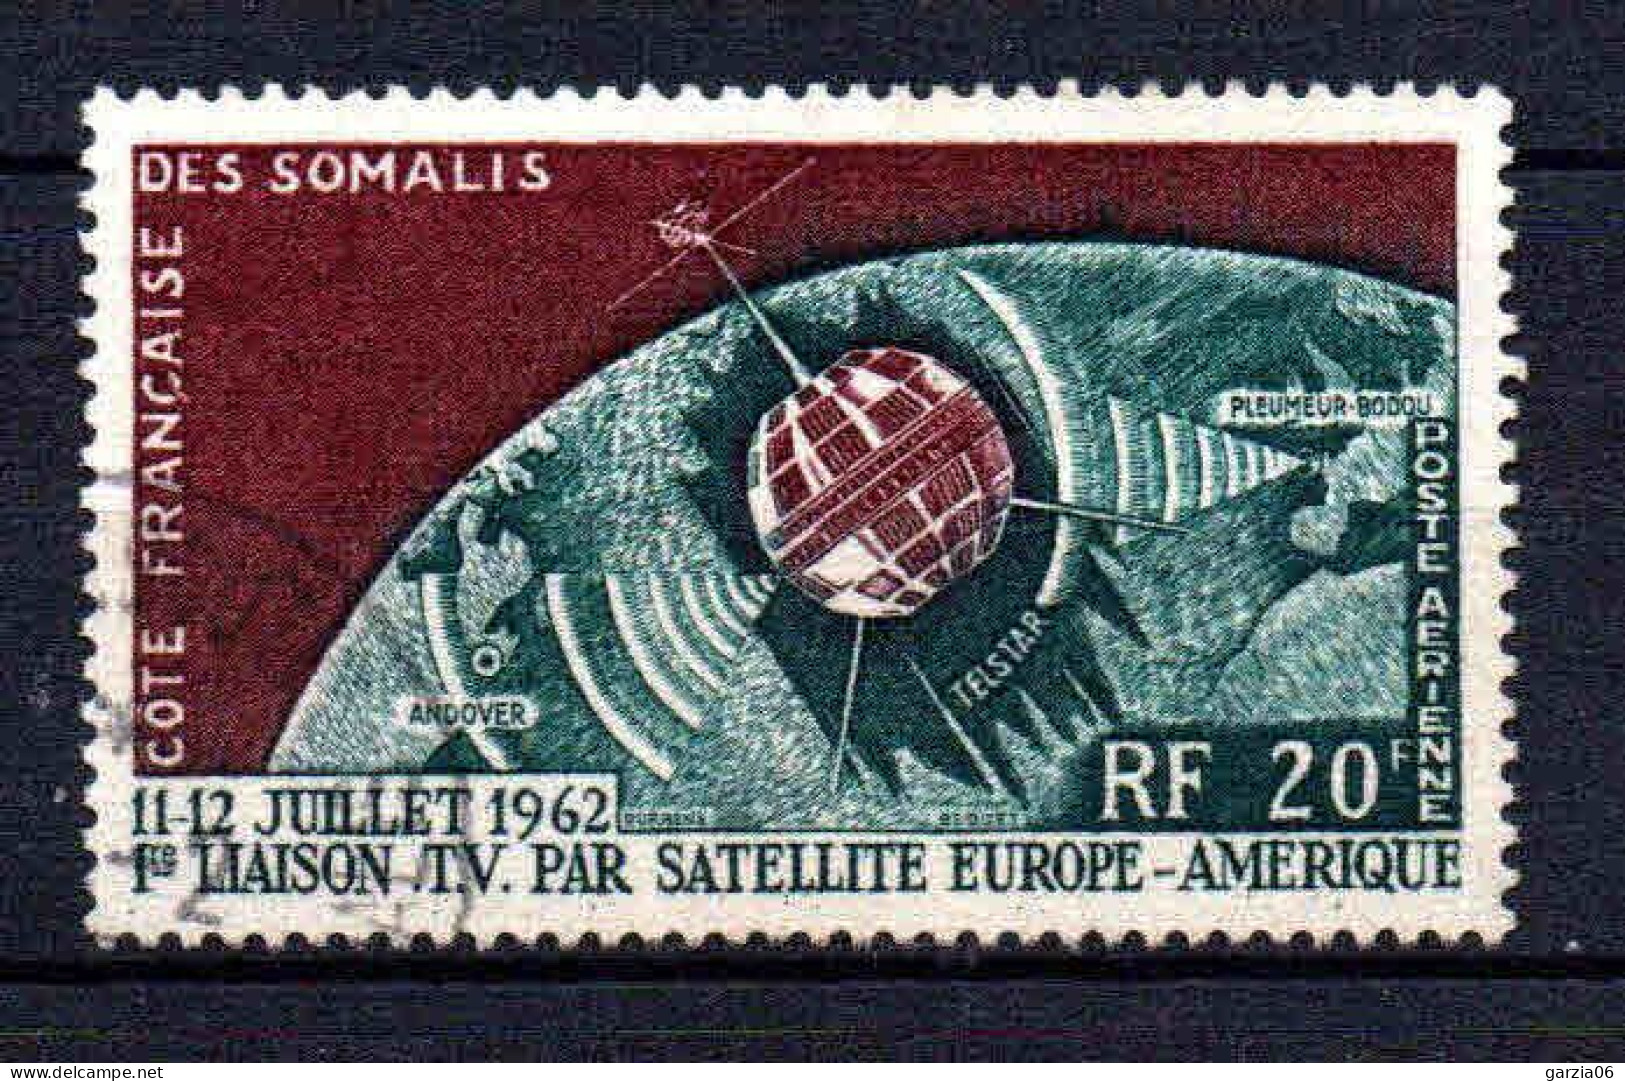 Cote Des Somalis  - 1963 - Télécommunications   -  PA 33 - Oblit - Used - Gebraucht